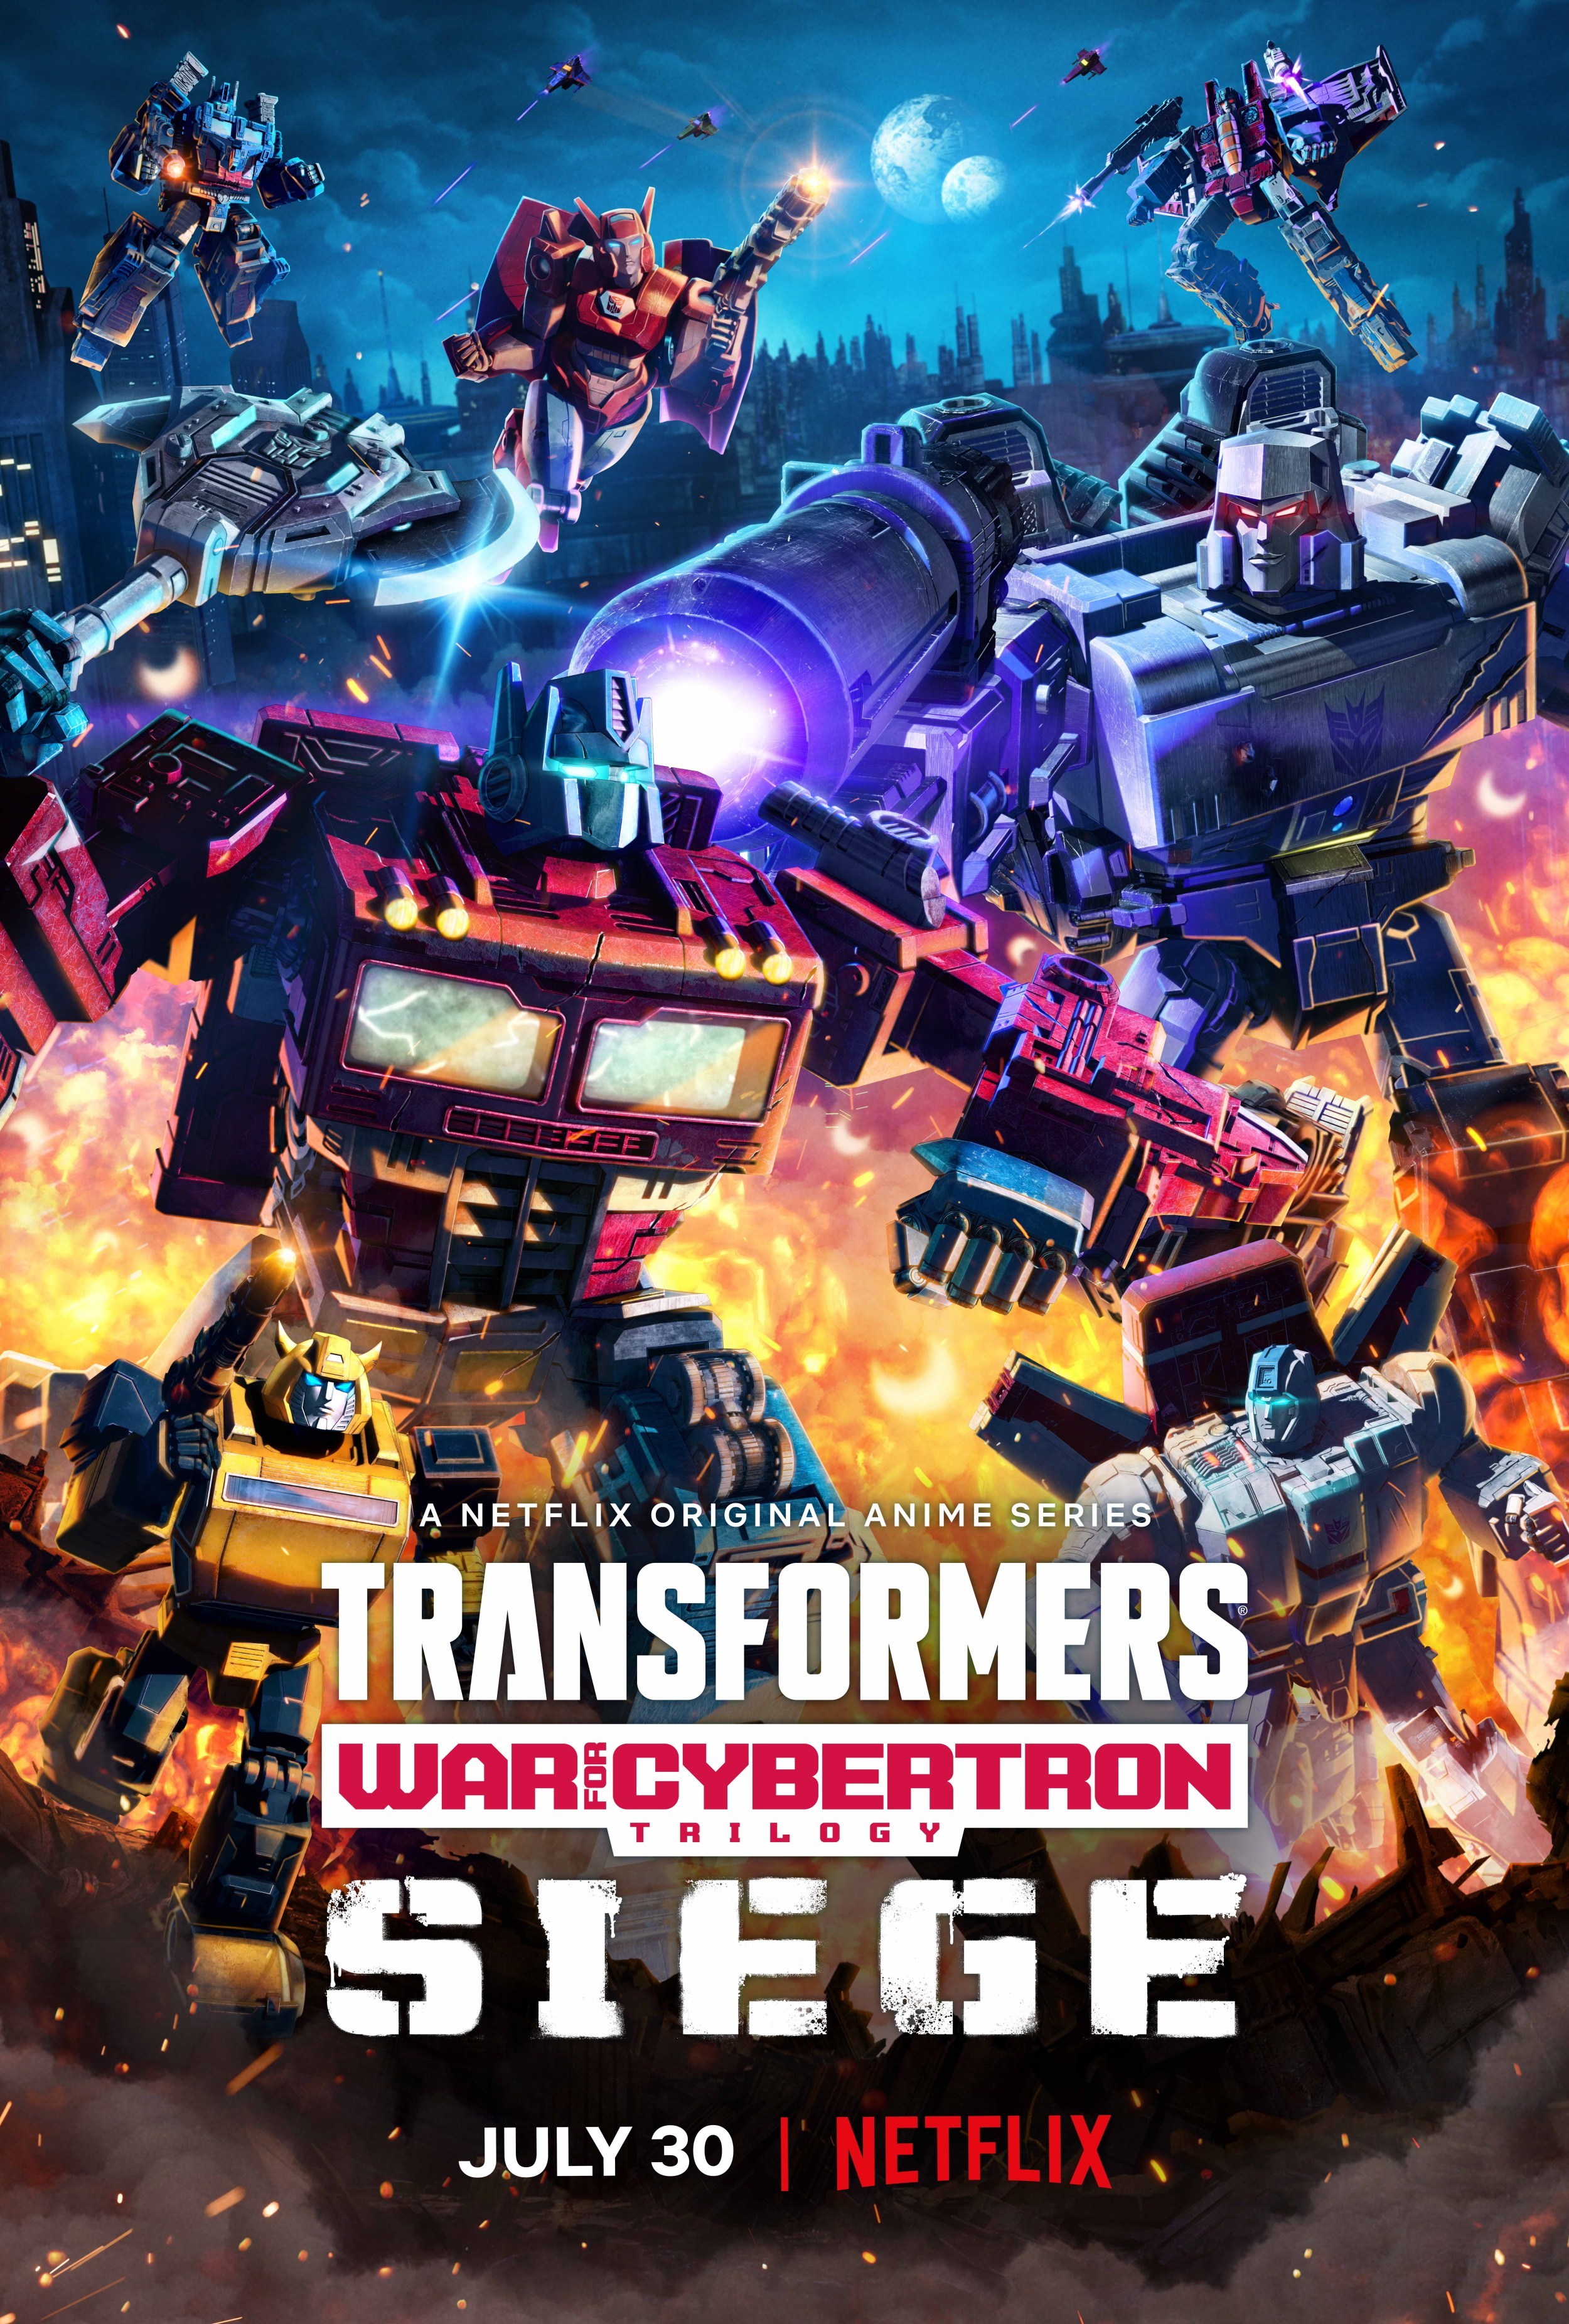 Soundwave (WFC) - Transformers Wiki